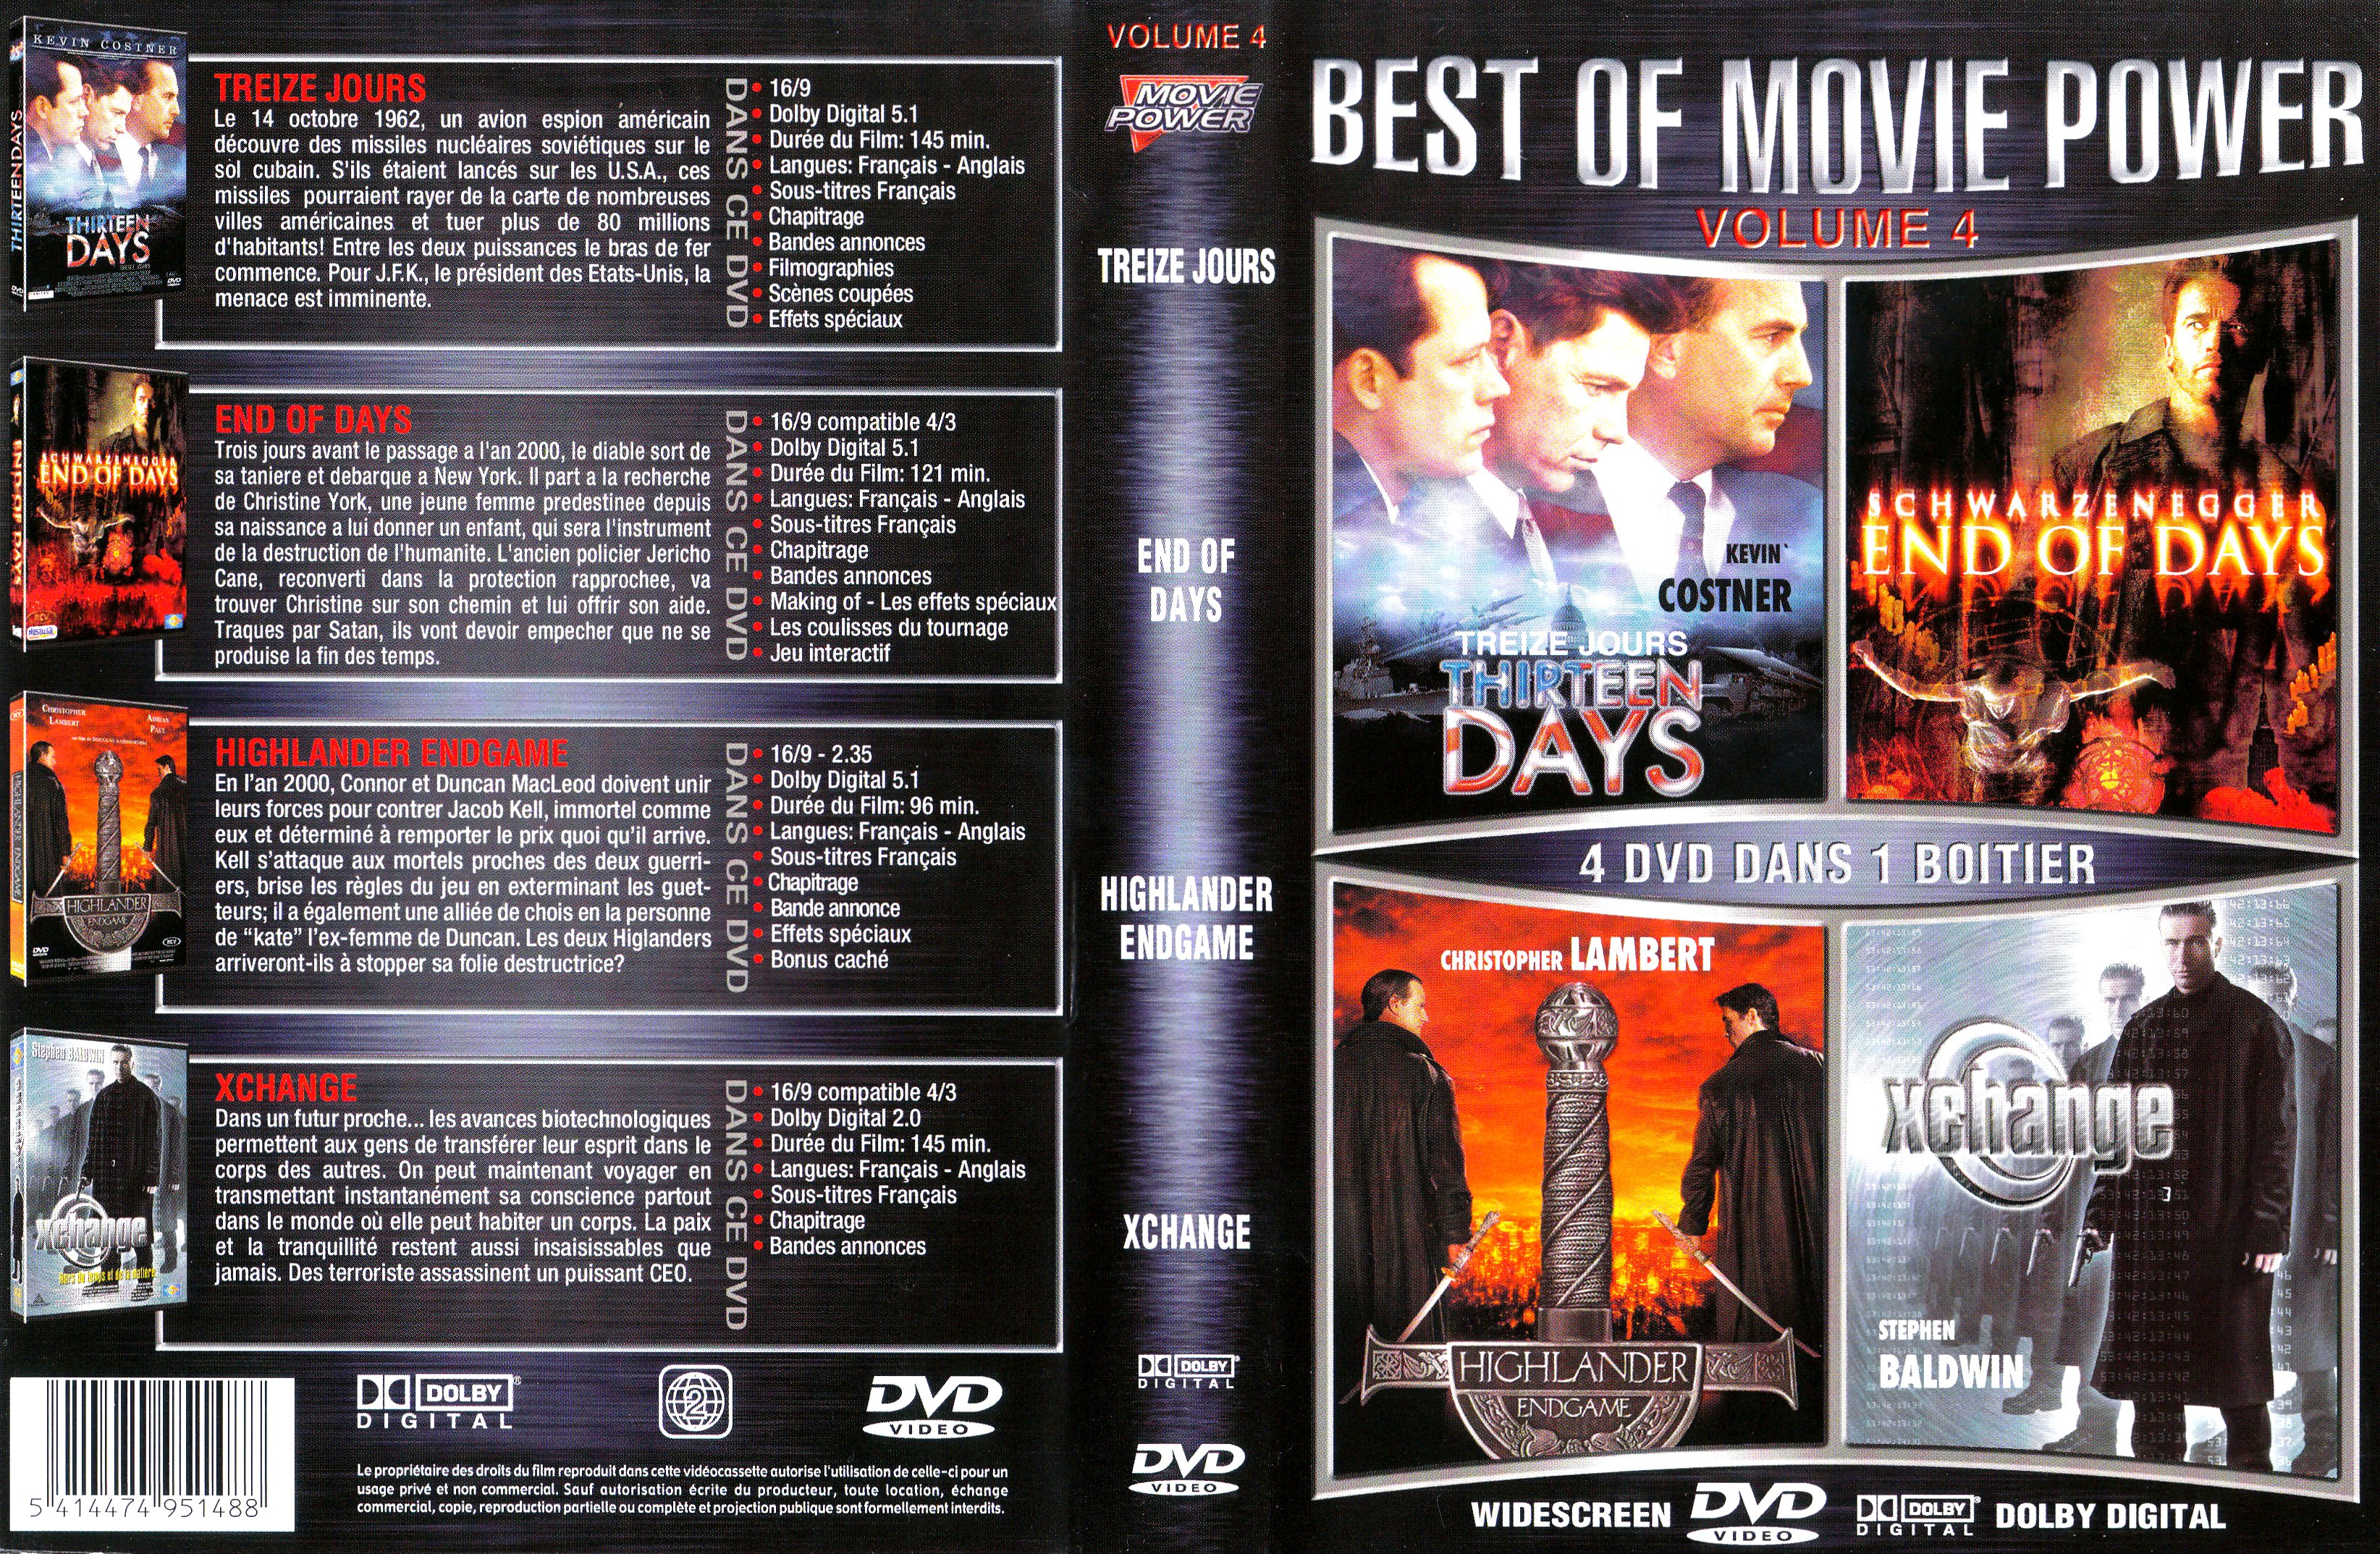 Jaquette DVD Best of treize jours + La fin des temps + Highlander endgame + Xchange